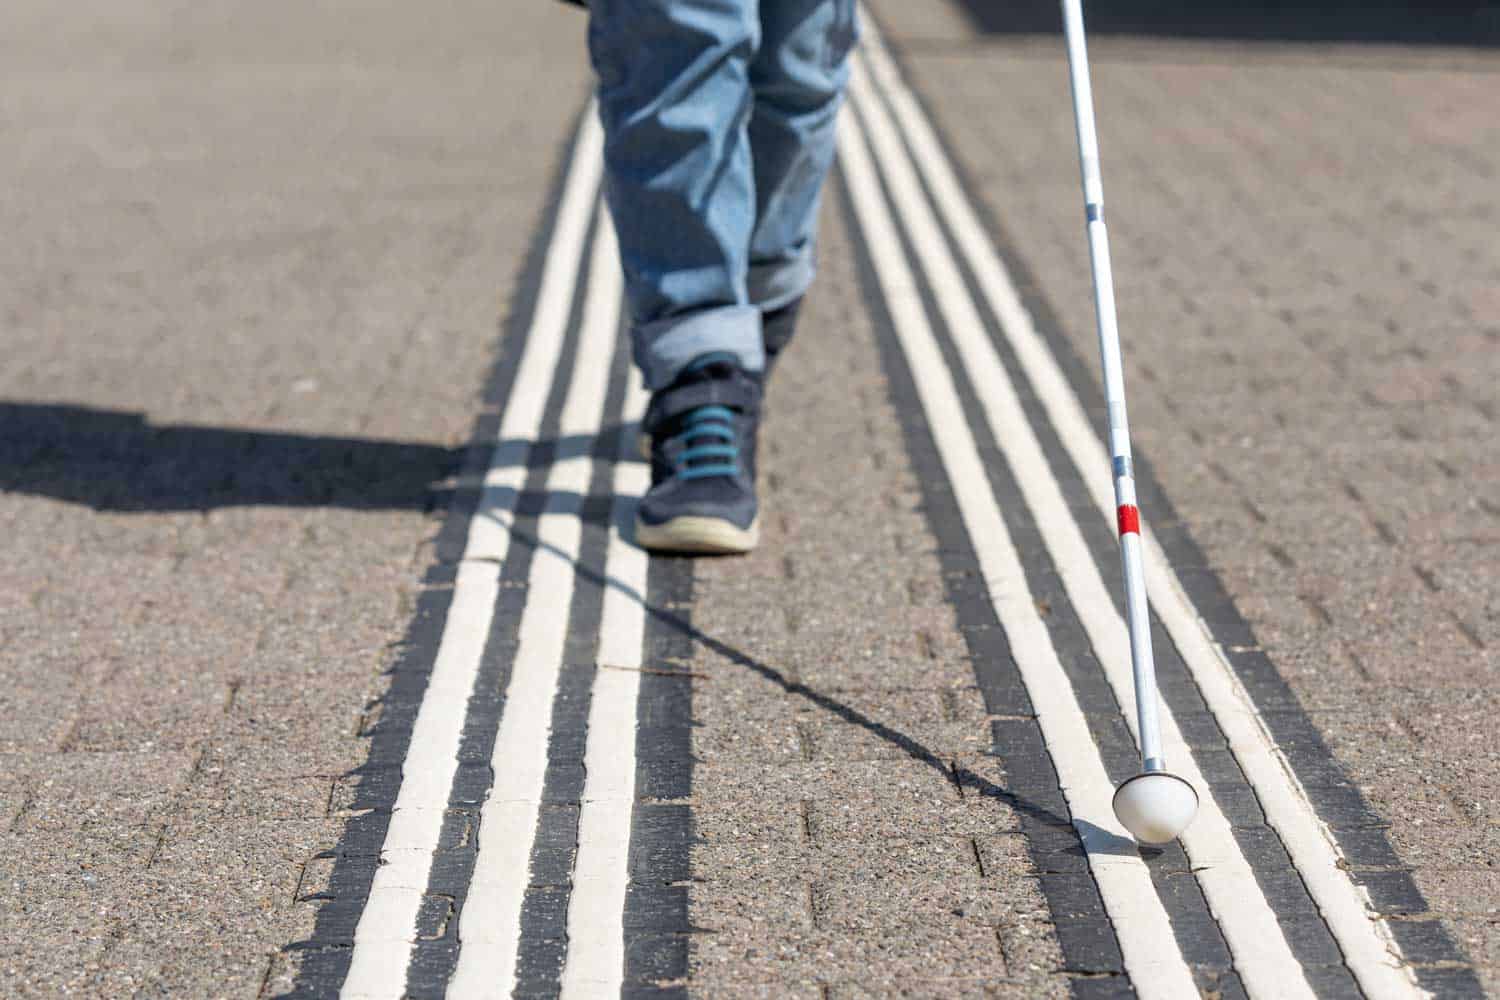 Beine einer sehbeeinträchtigten Person mit Blindenstock neben weissen Bodenleitlinien für Blinde.